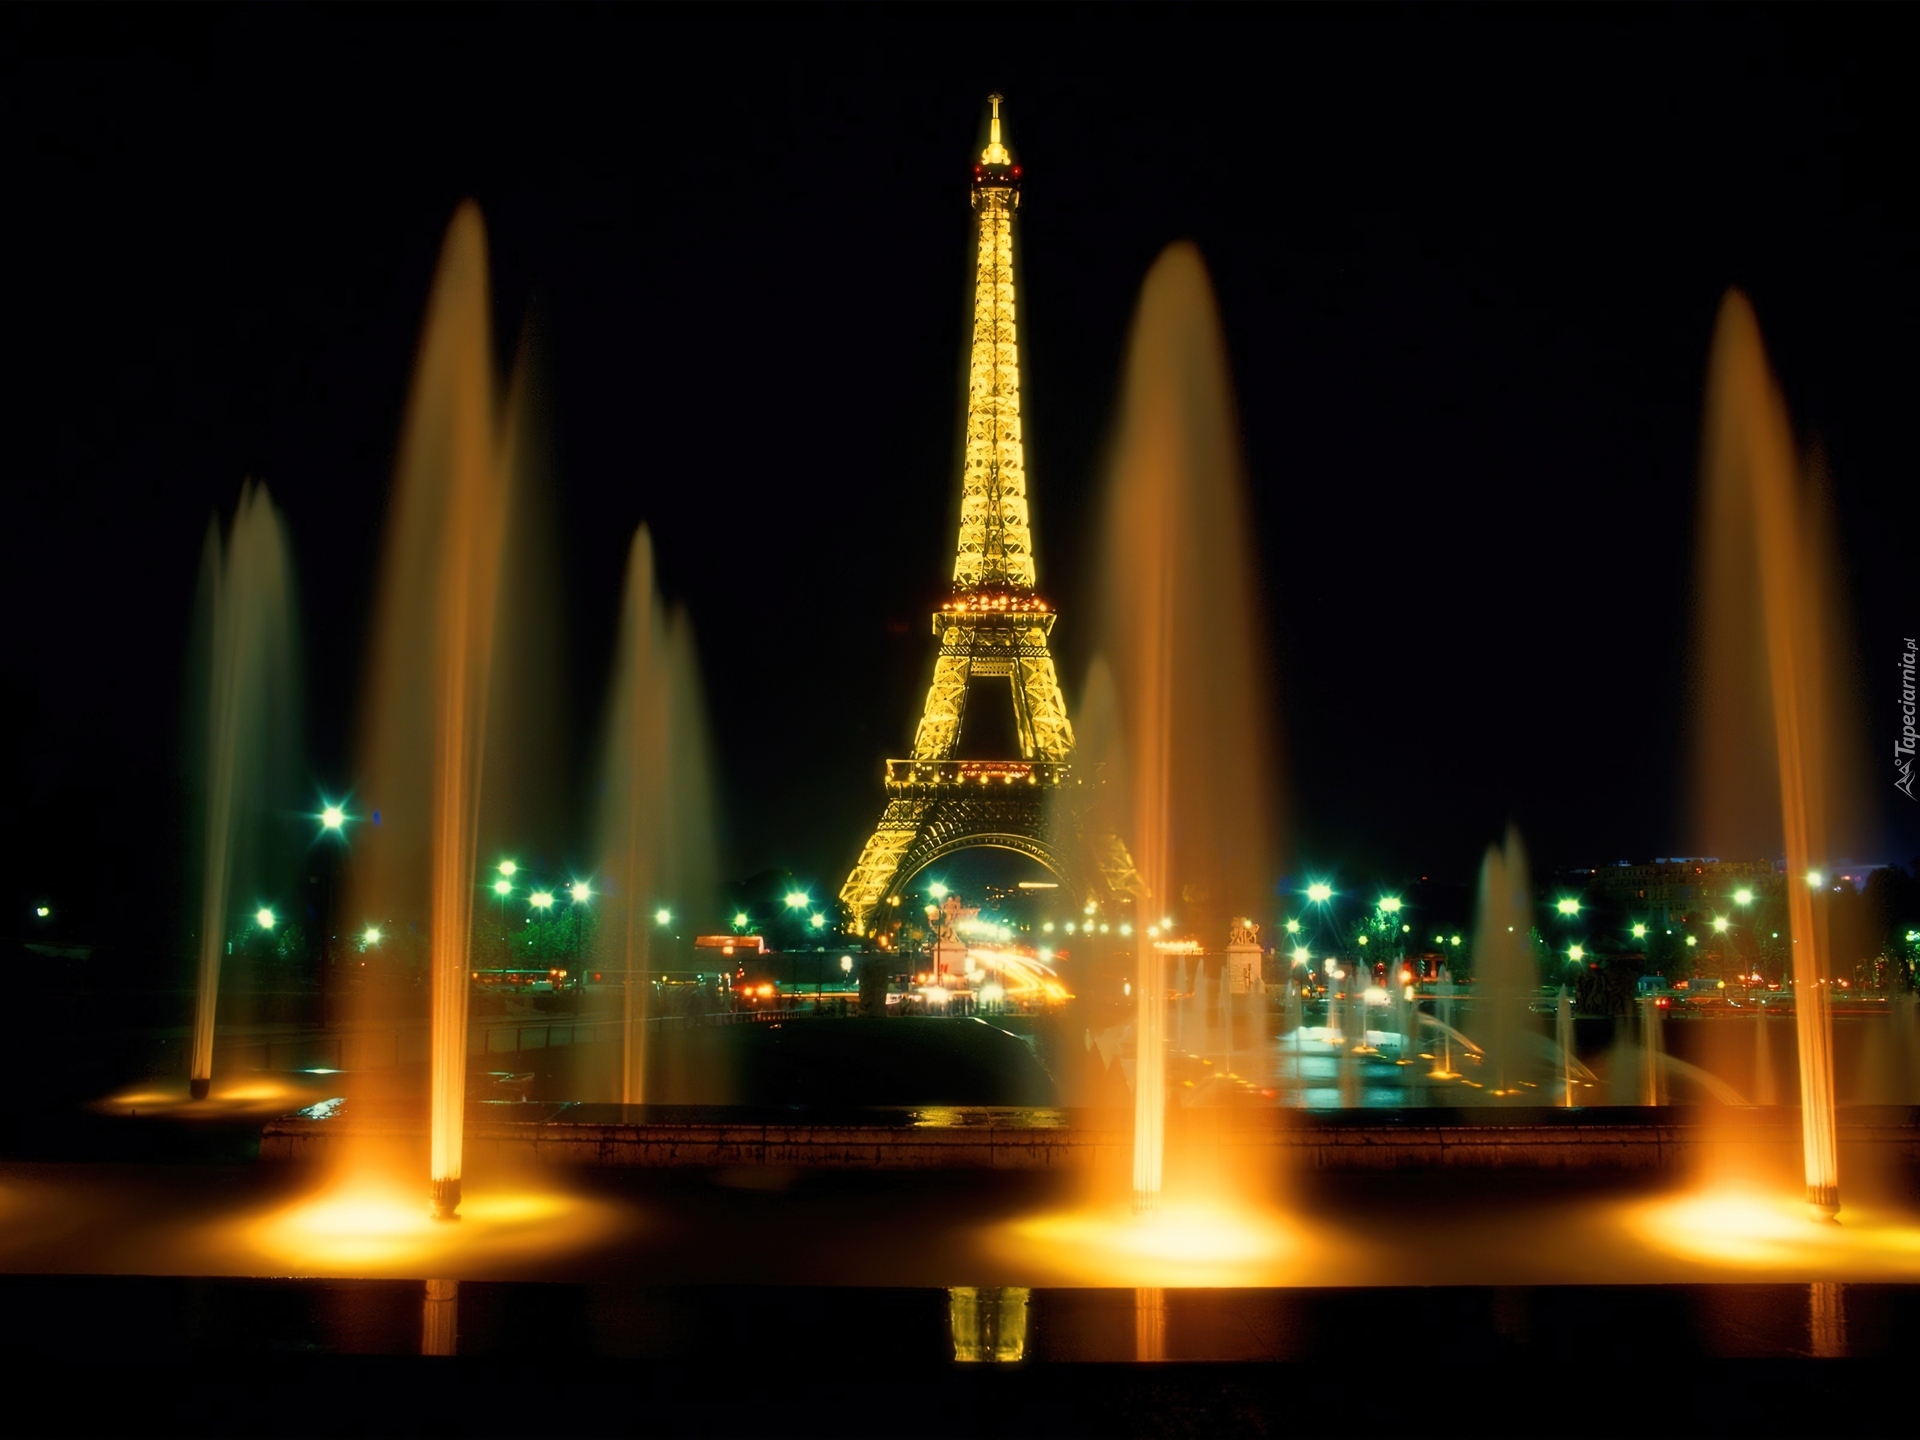 Wieża Eiffla, Fontanna, Noc, Światła, Paryż, Francja